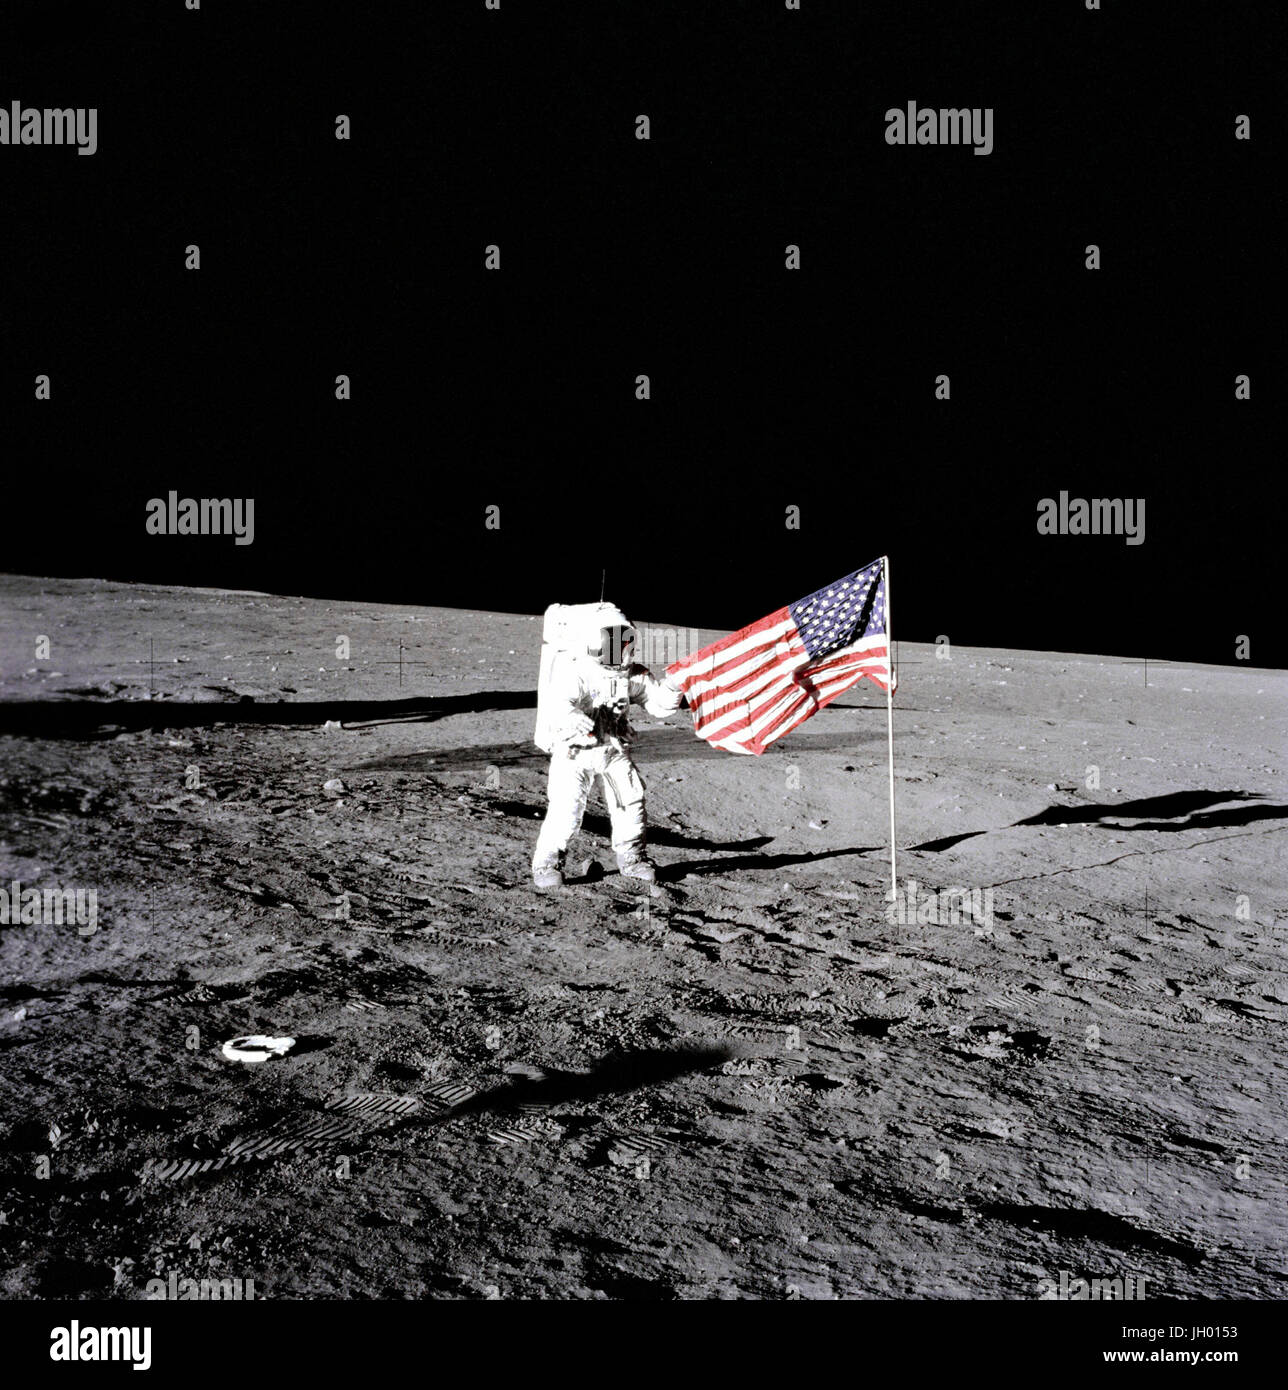 Conrad entfaltet Flagge. Apollo 12 Astronauten Charles "Pete" Conrad steht neben der Flagge der Vereinigten Staaten nach dem wurde auf der Mondoberfläche während der ersten Extravehicular Activity (EVA-1), am 19. November 1969 entfalteten. Mehrere Spuren gemacht durch die Besatzung ist auf dem Foto ersichtlich. Fotograf: NASA Alan Bean Stockfoto